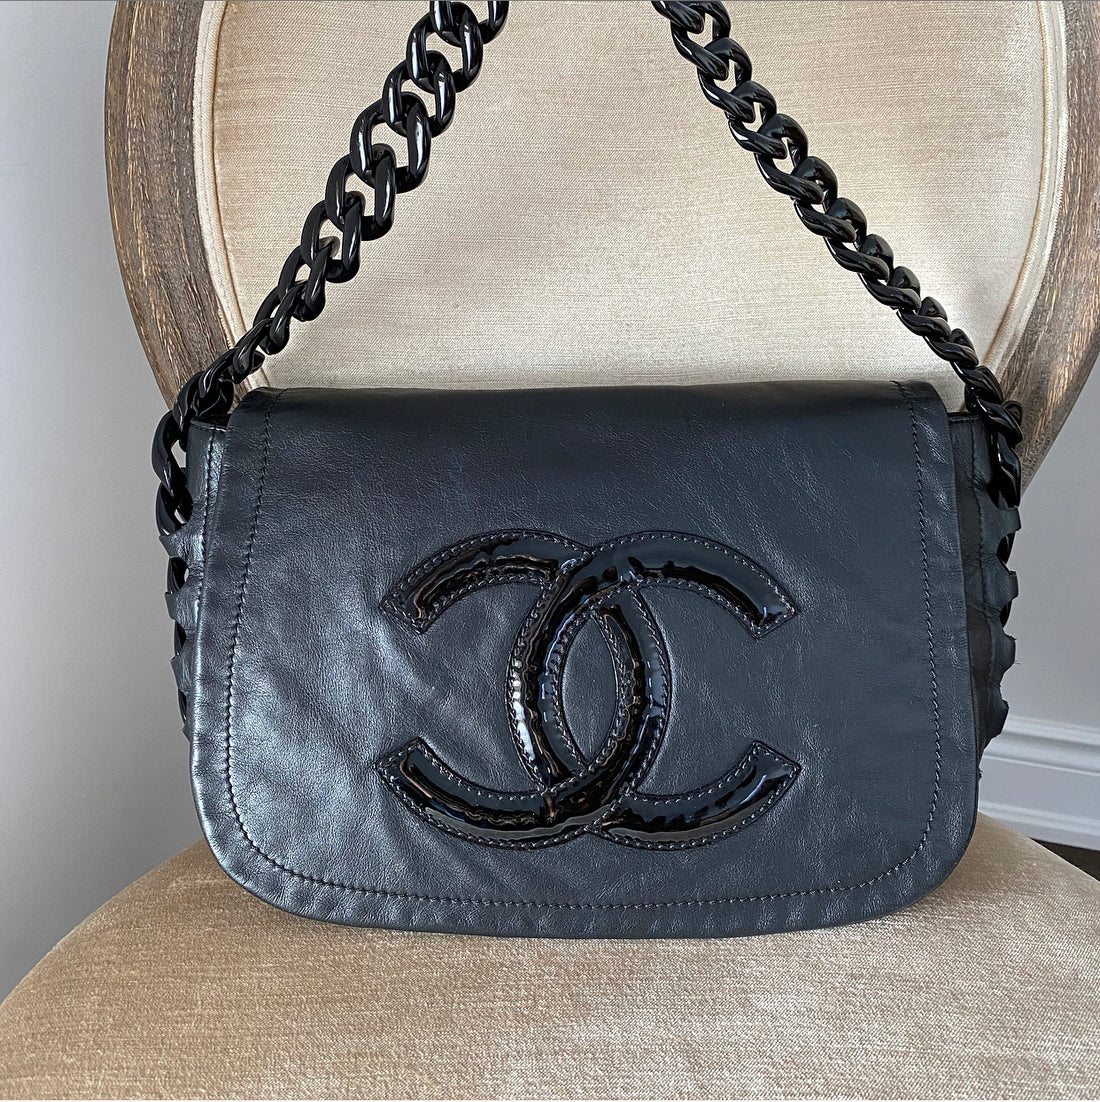 Chanel Black Patent Logo Shoulder Bag